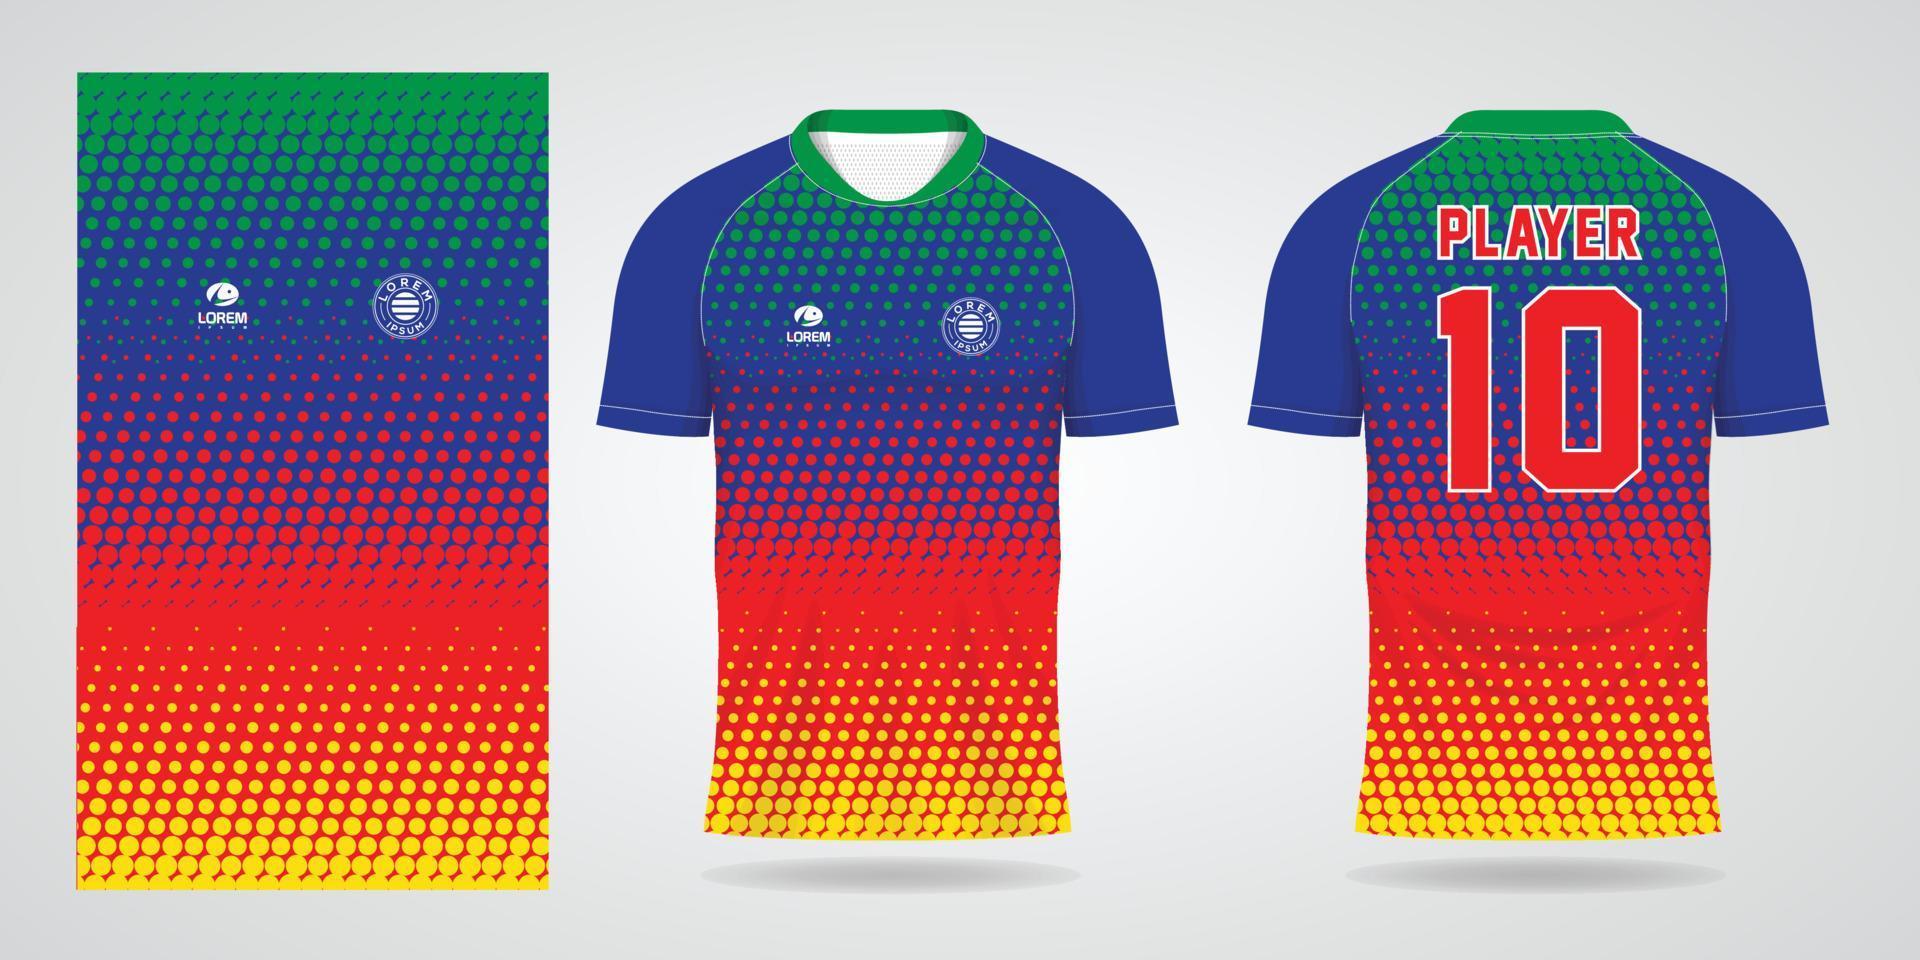 modello di design sportivo in jersey di calcio colorato vettore